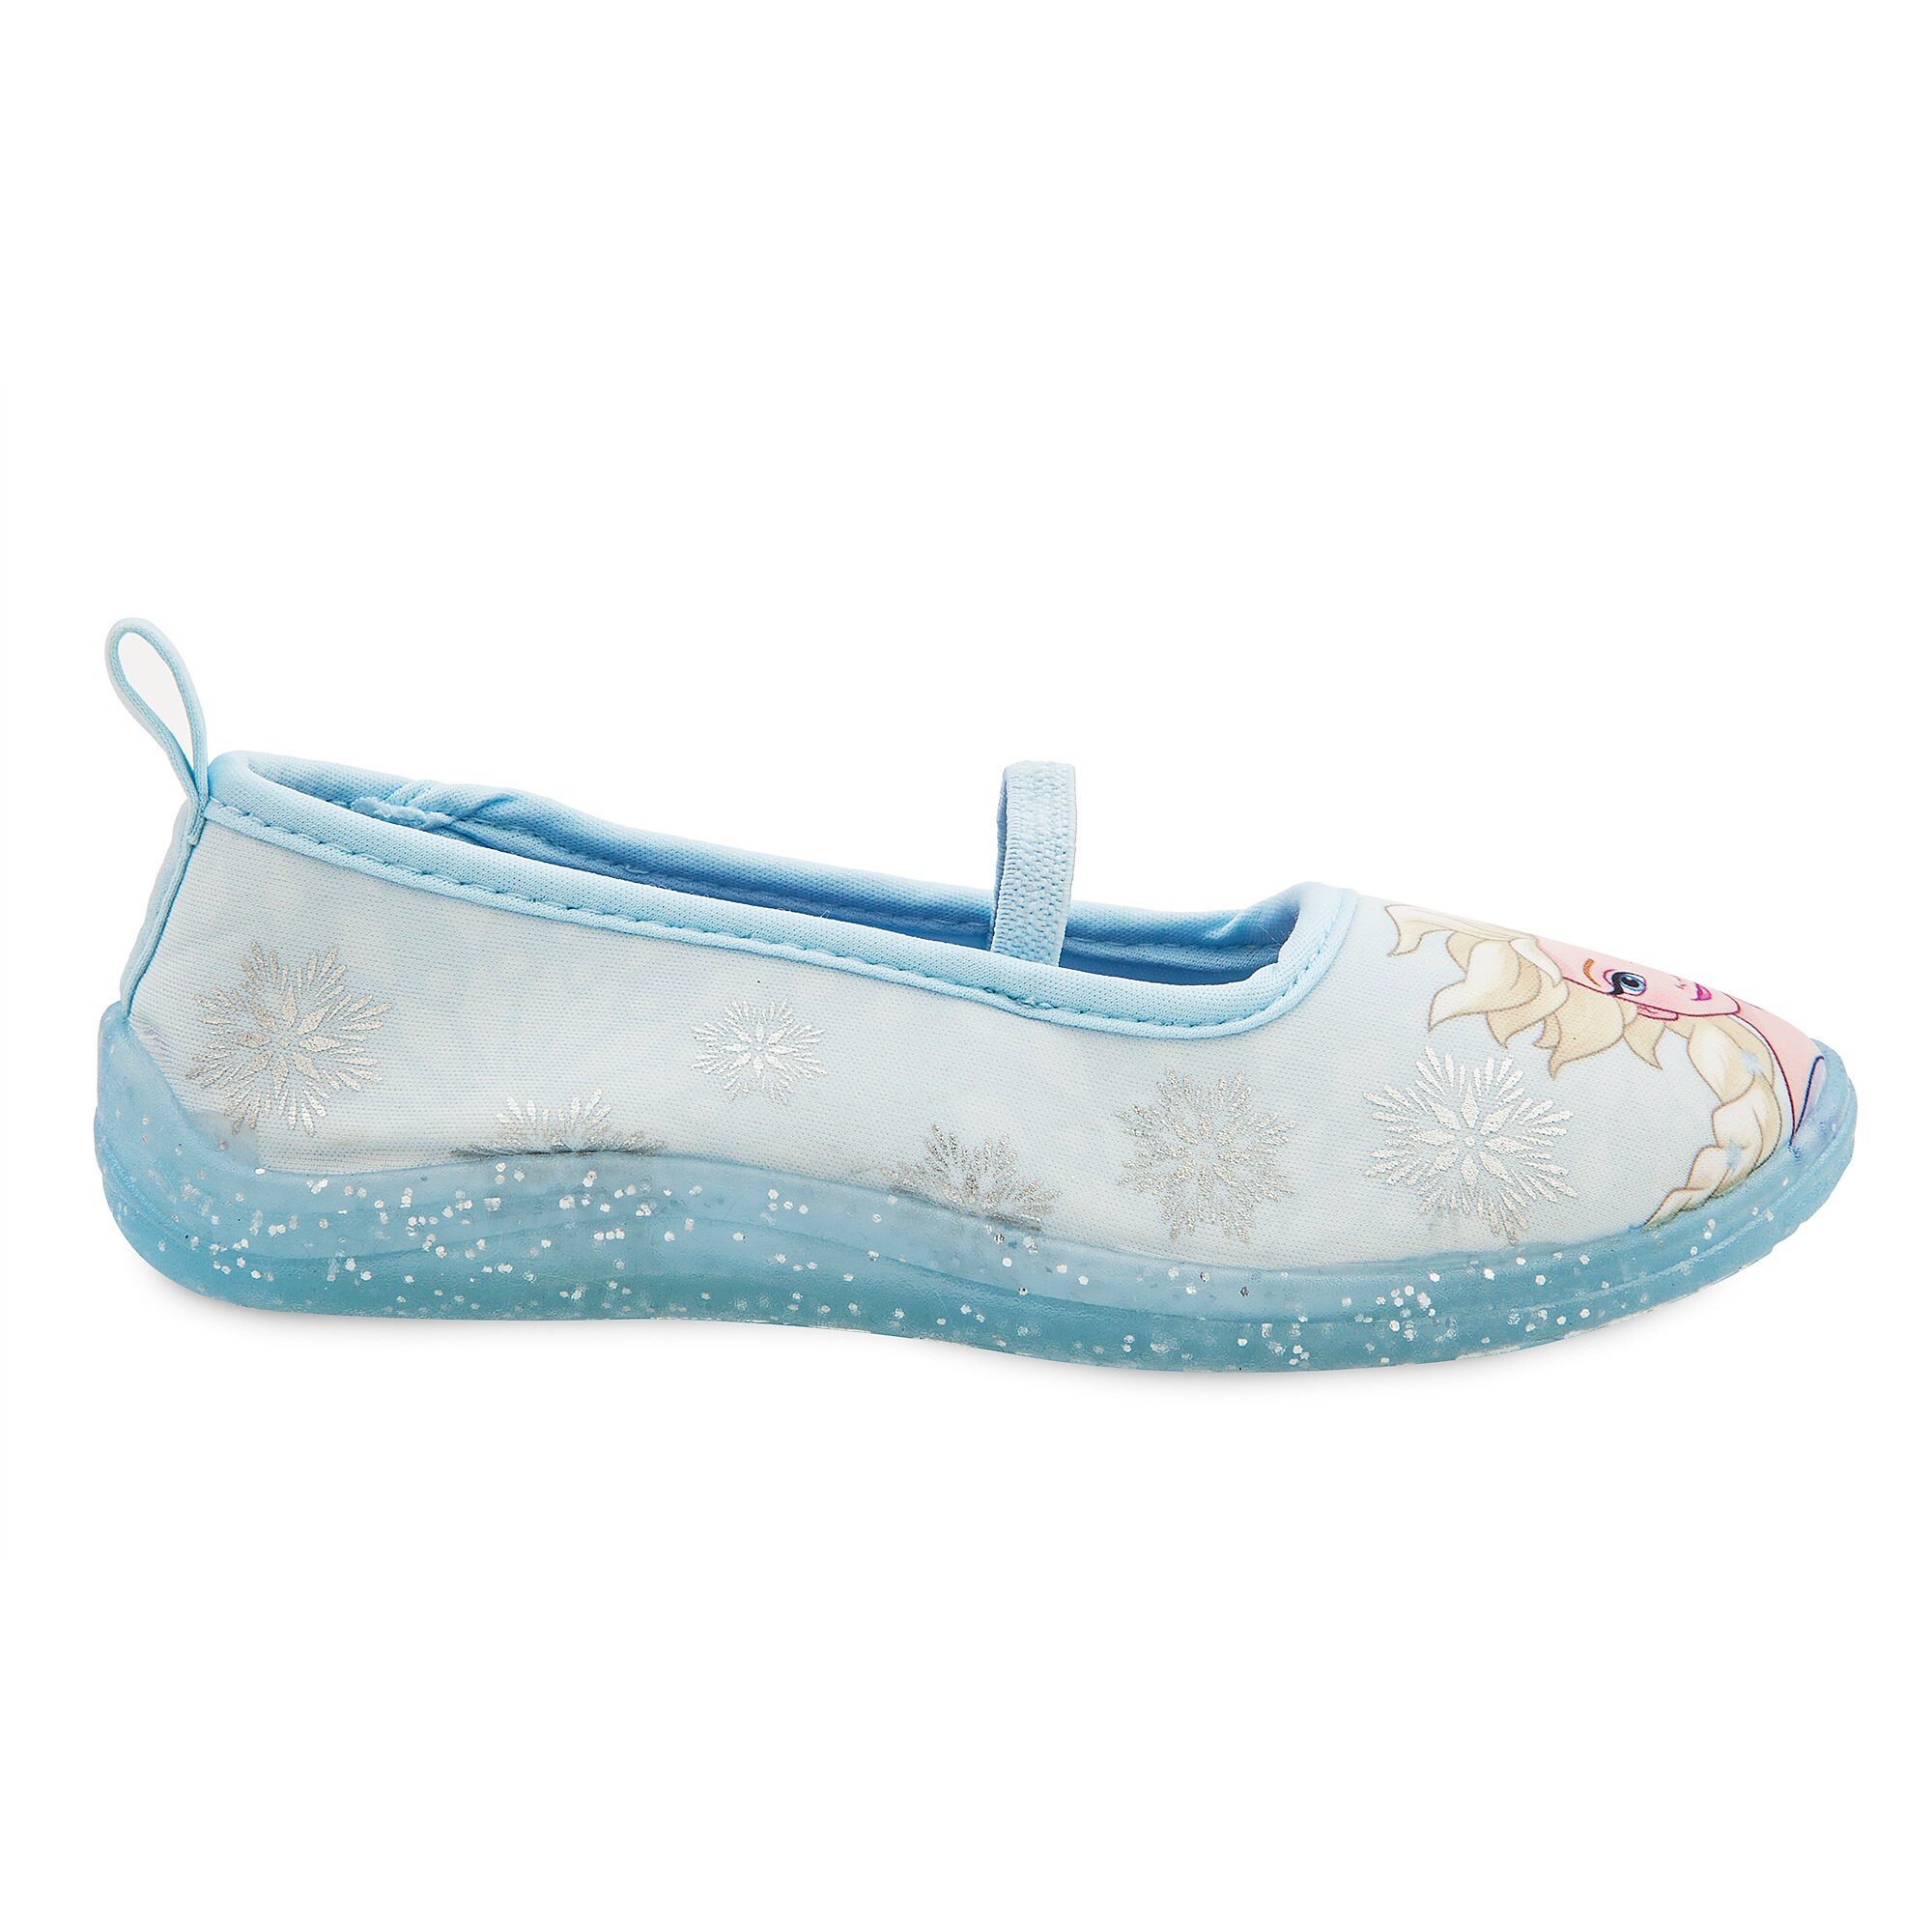 Elsa Swim Shoes for Kids - Frozen